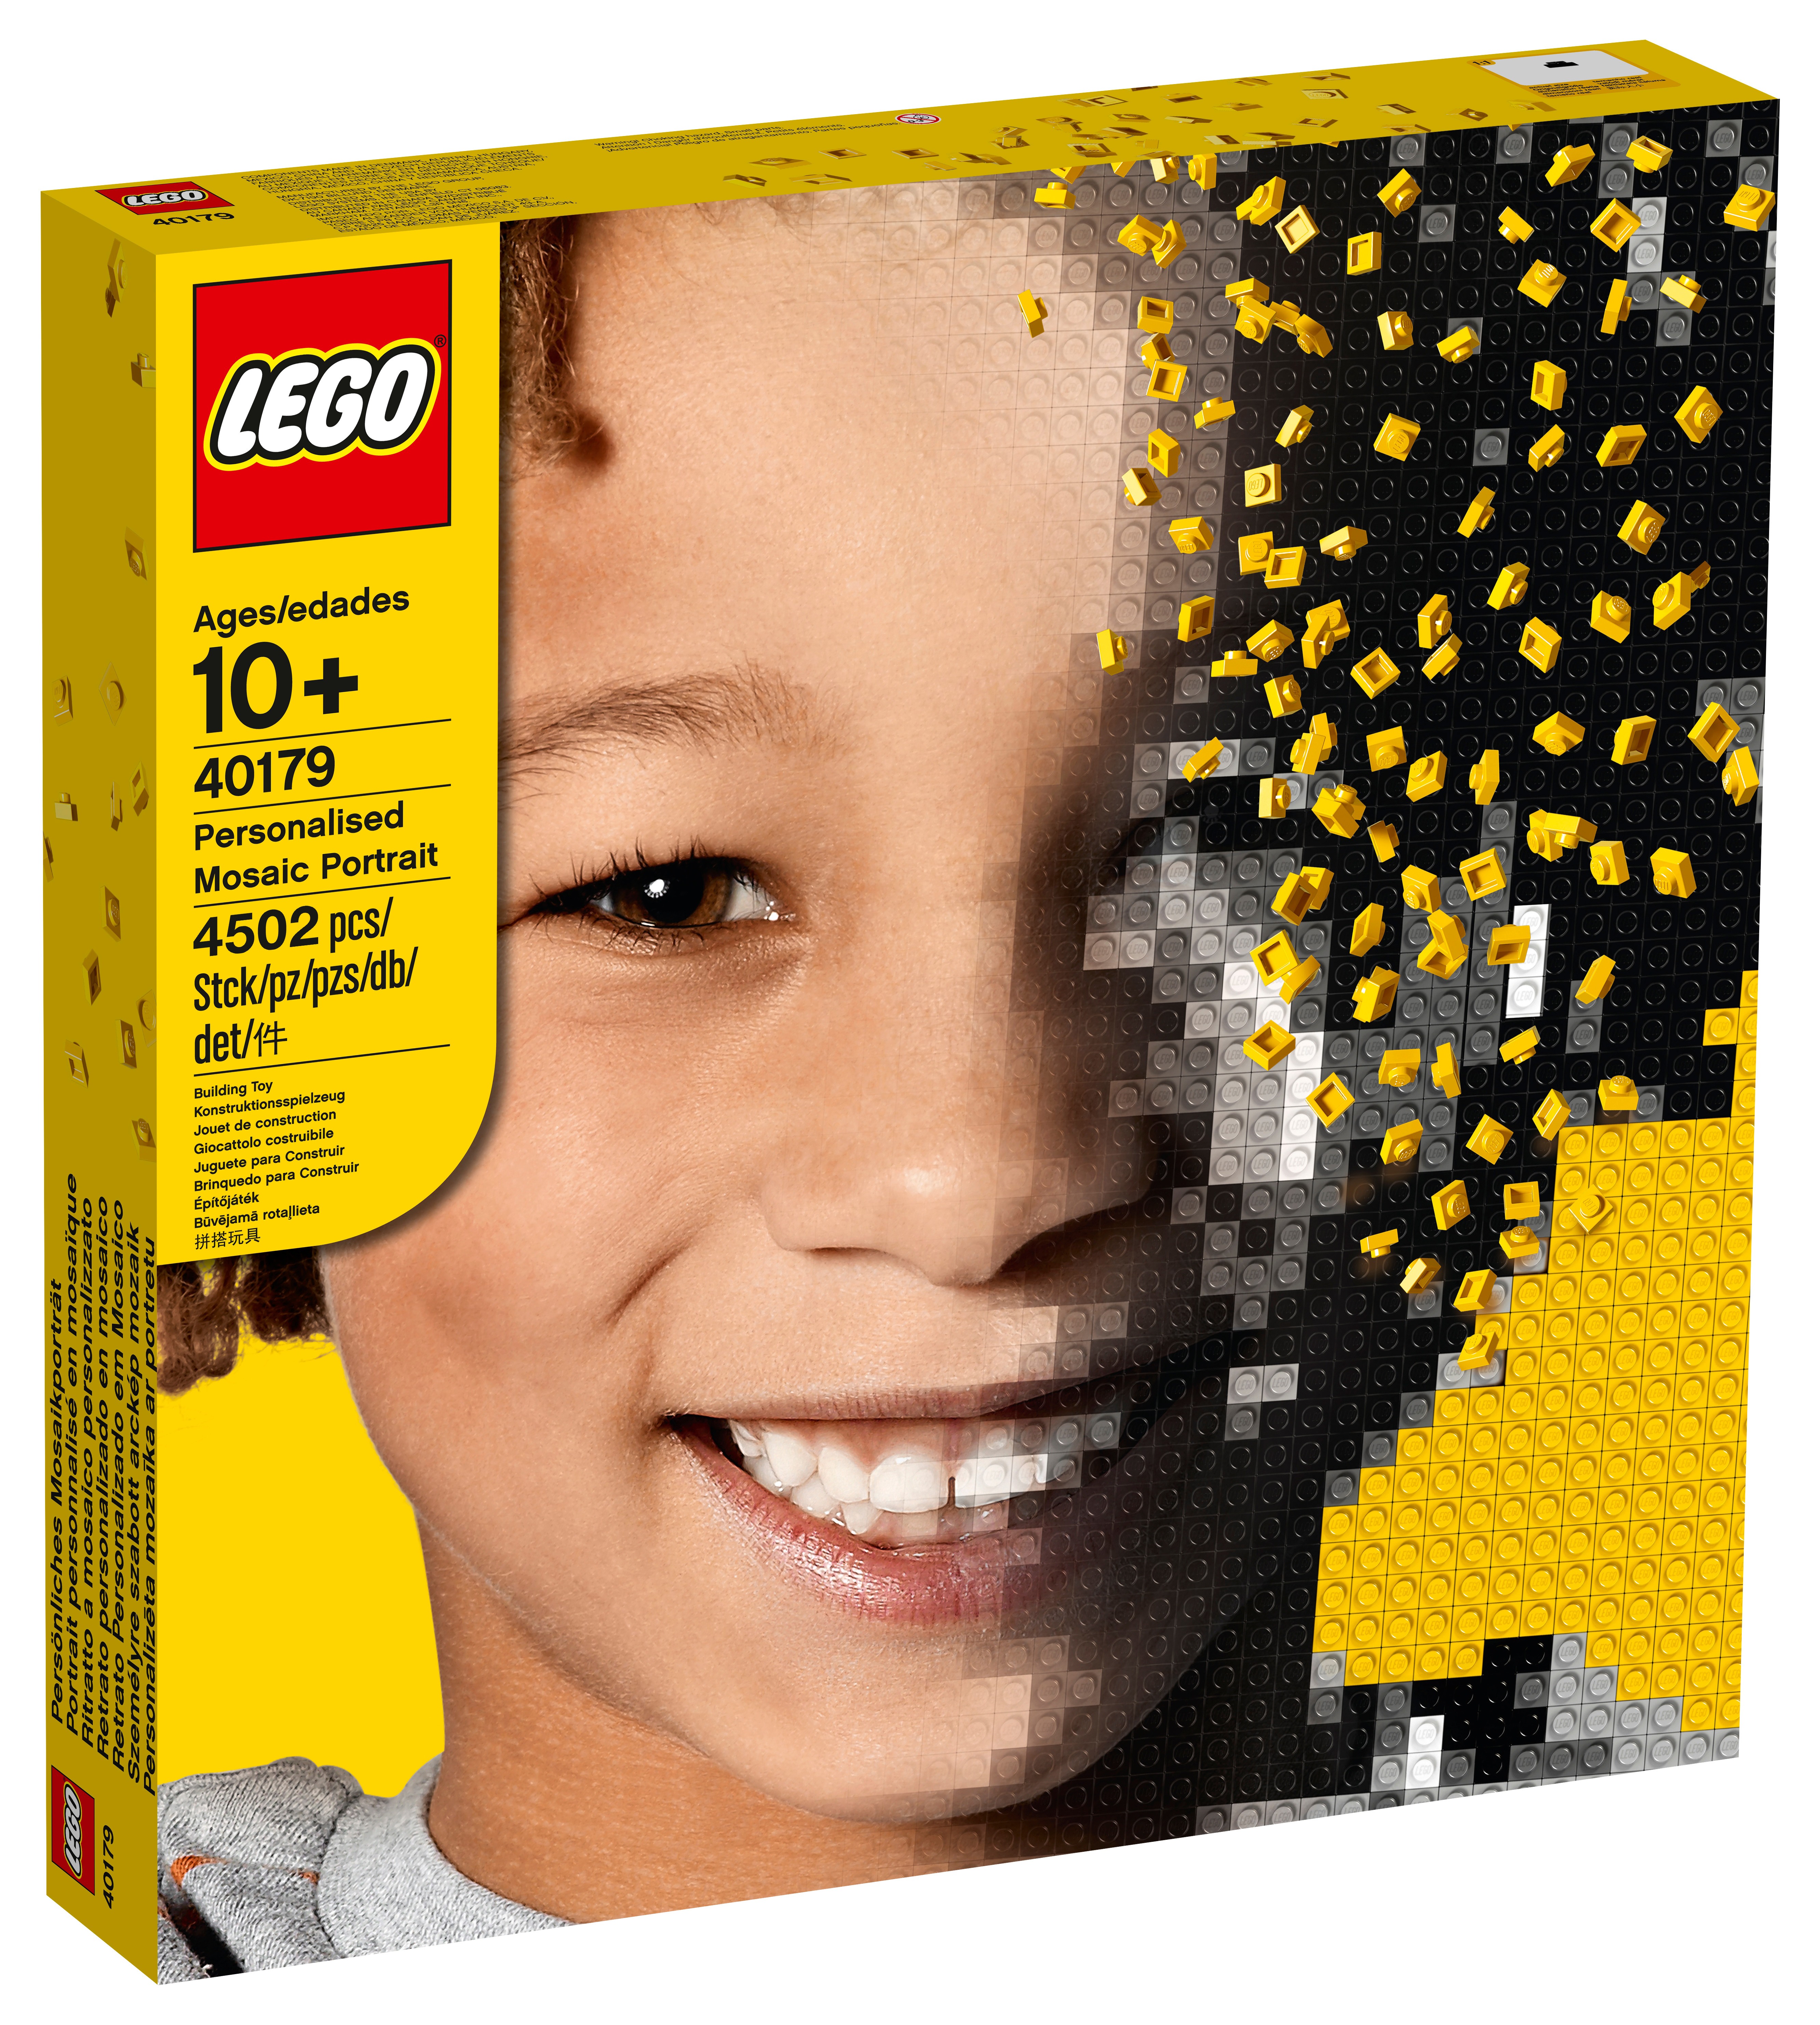 Details about   QBRIX Mosaic Maker 3500 pcs w/ LEGO Bricks Portrait Photo Construction Puzzle 